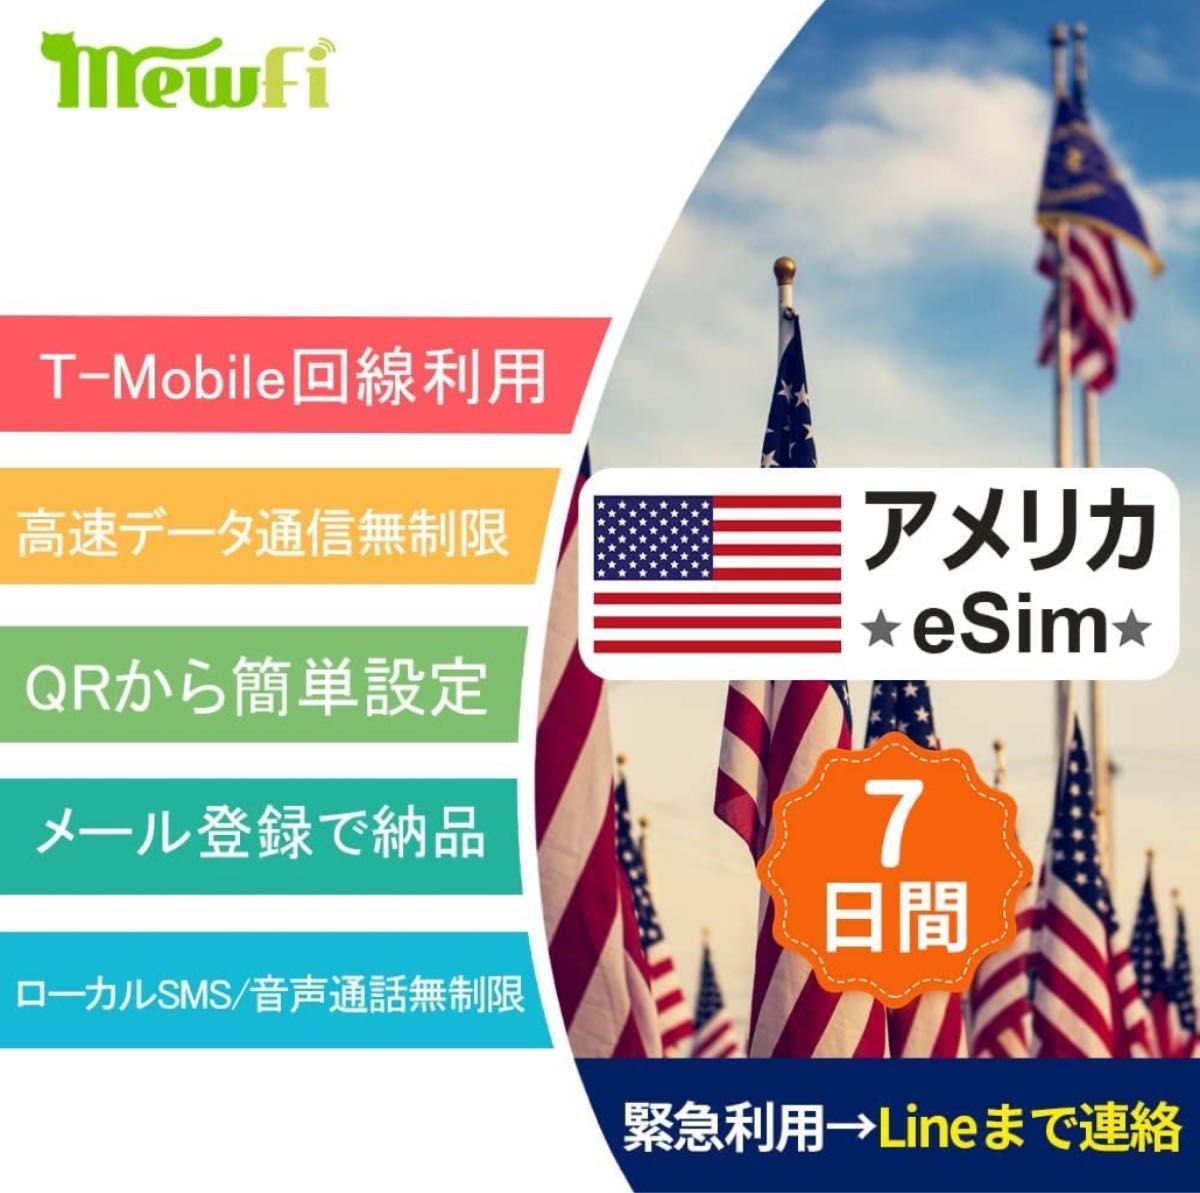 【アメリカeSim】ハワイeSim 7日間 高速データ通信無制限使い放題